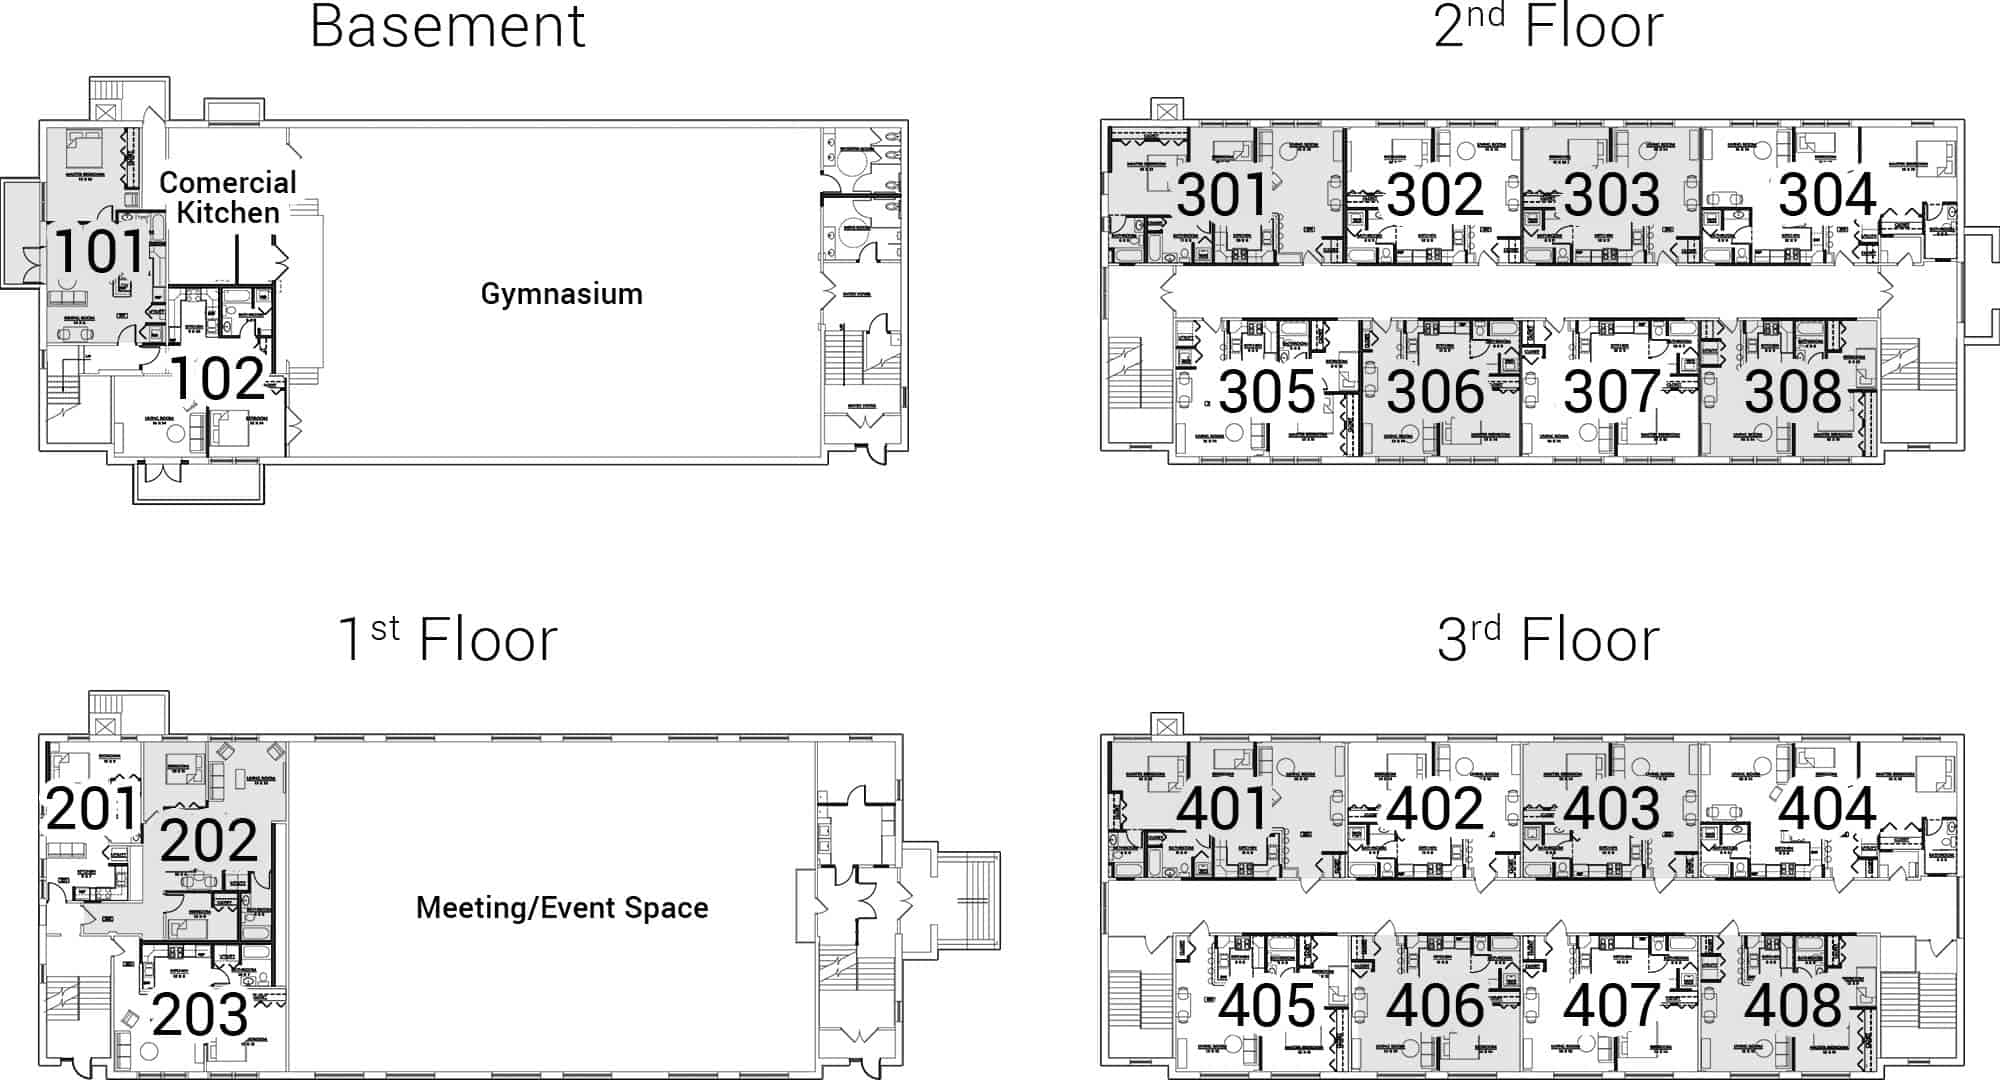 257-Lafayette-Floorplans